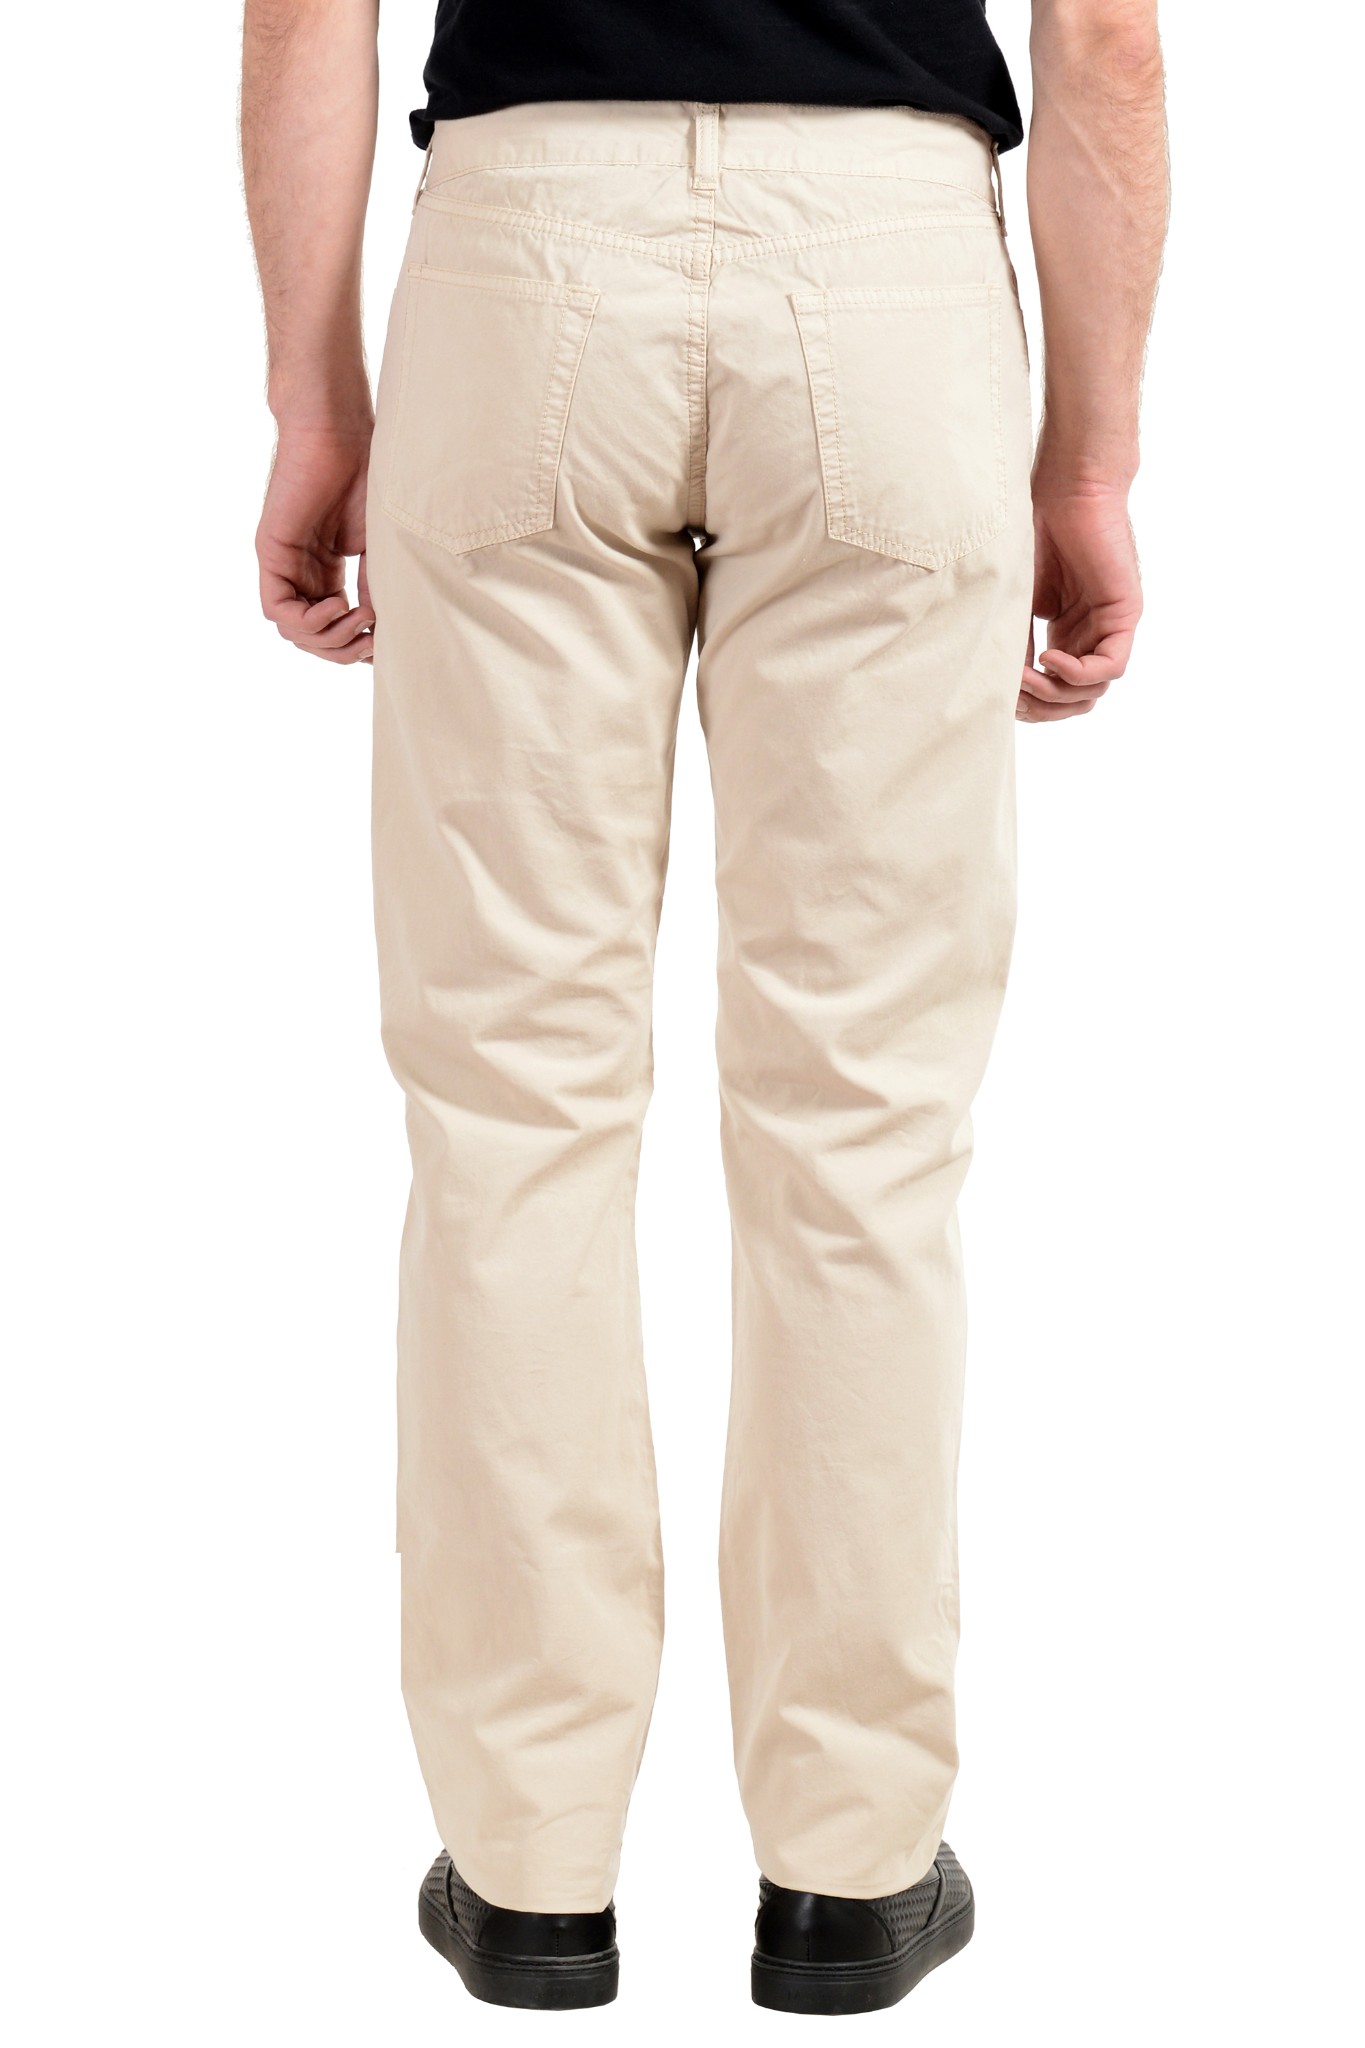 Malo Men's Beige Straight Leg Light Jeans US 32 IT 48 | eBay